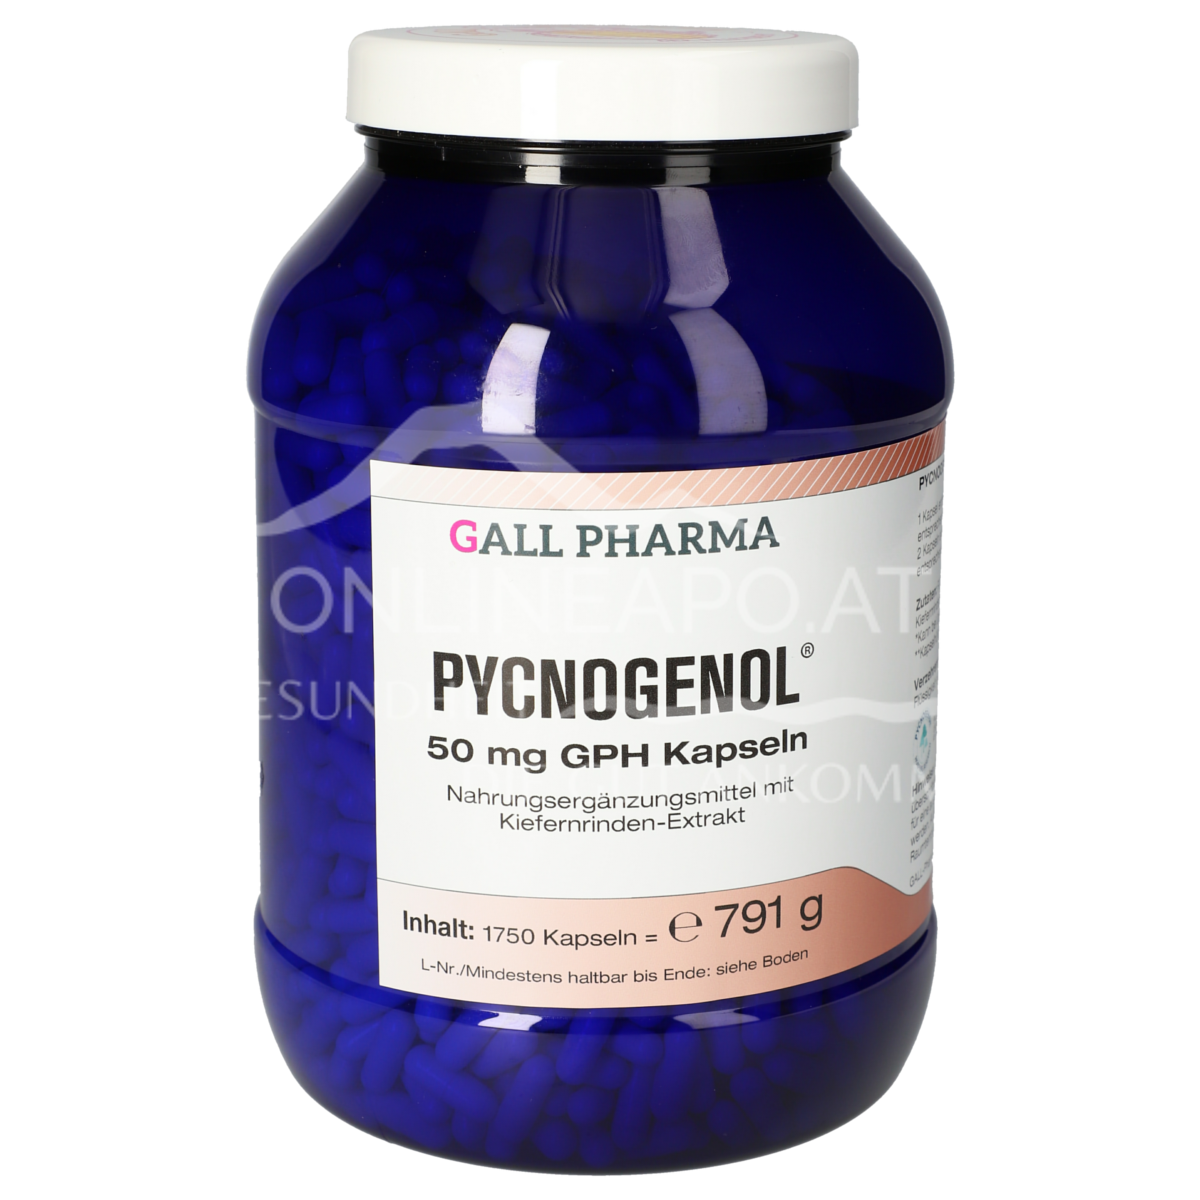 Gall Pharma Pycnogenol® 50 mg Kapseln